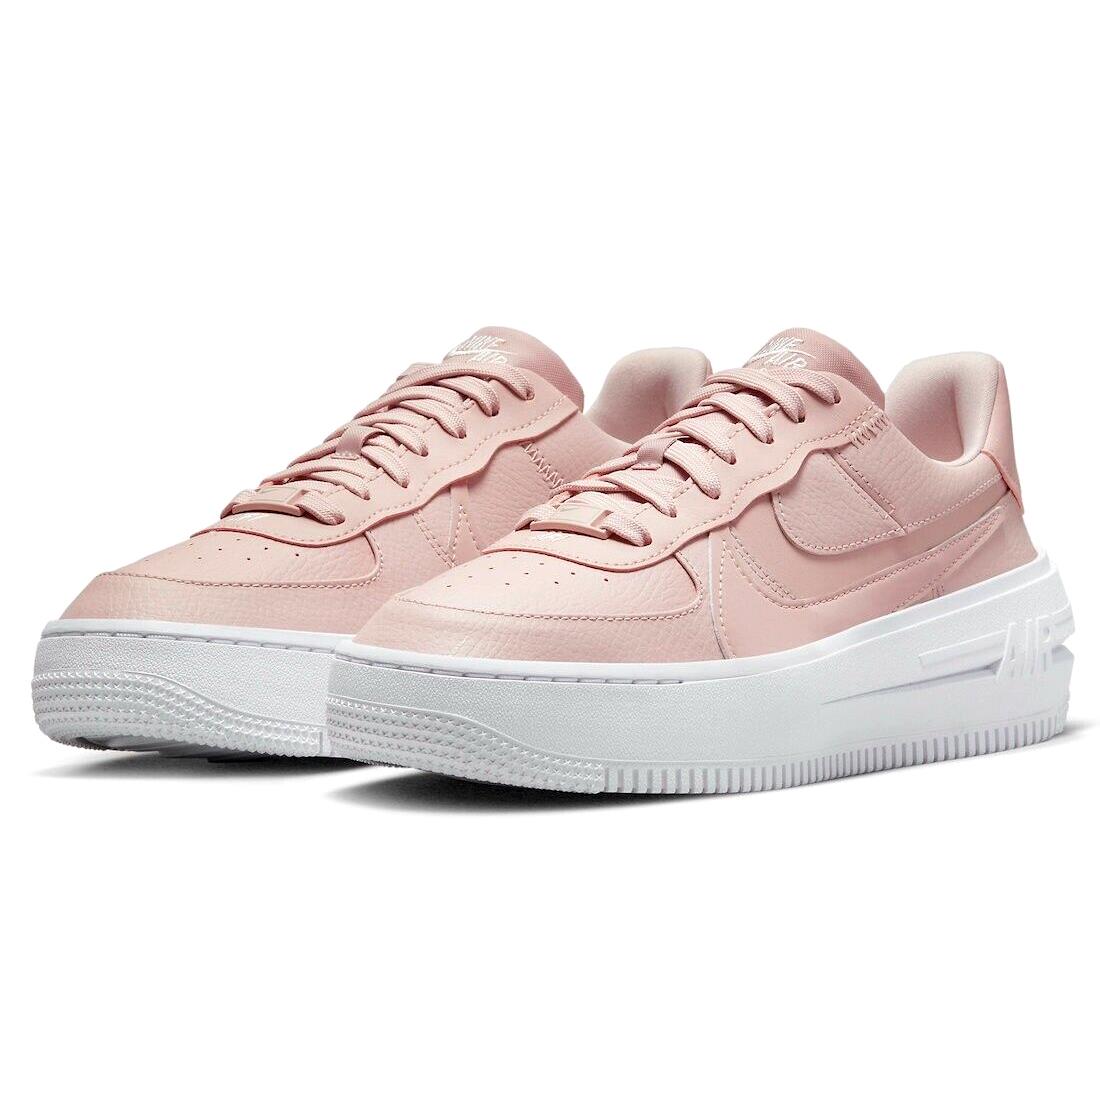 Nike AF1 Platform Womens Size 10 Shoes DJ9946 602 Pink Oxford/light Soft Pink - Multicolor